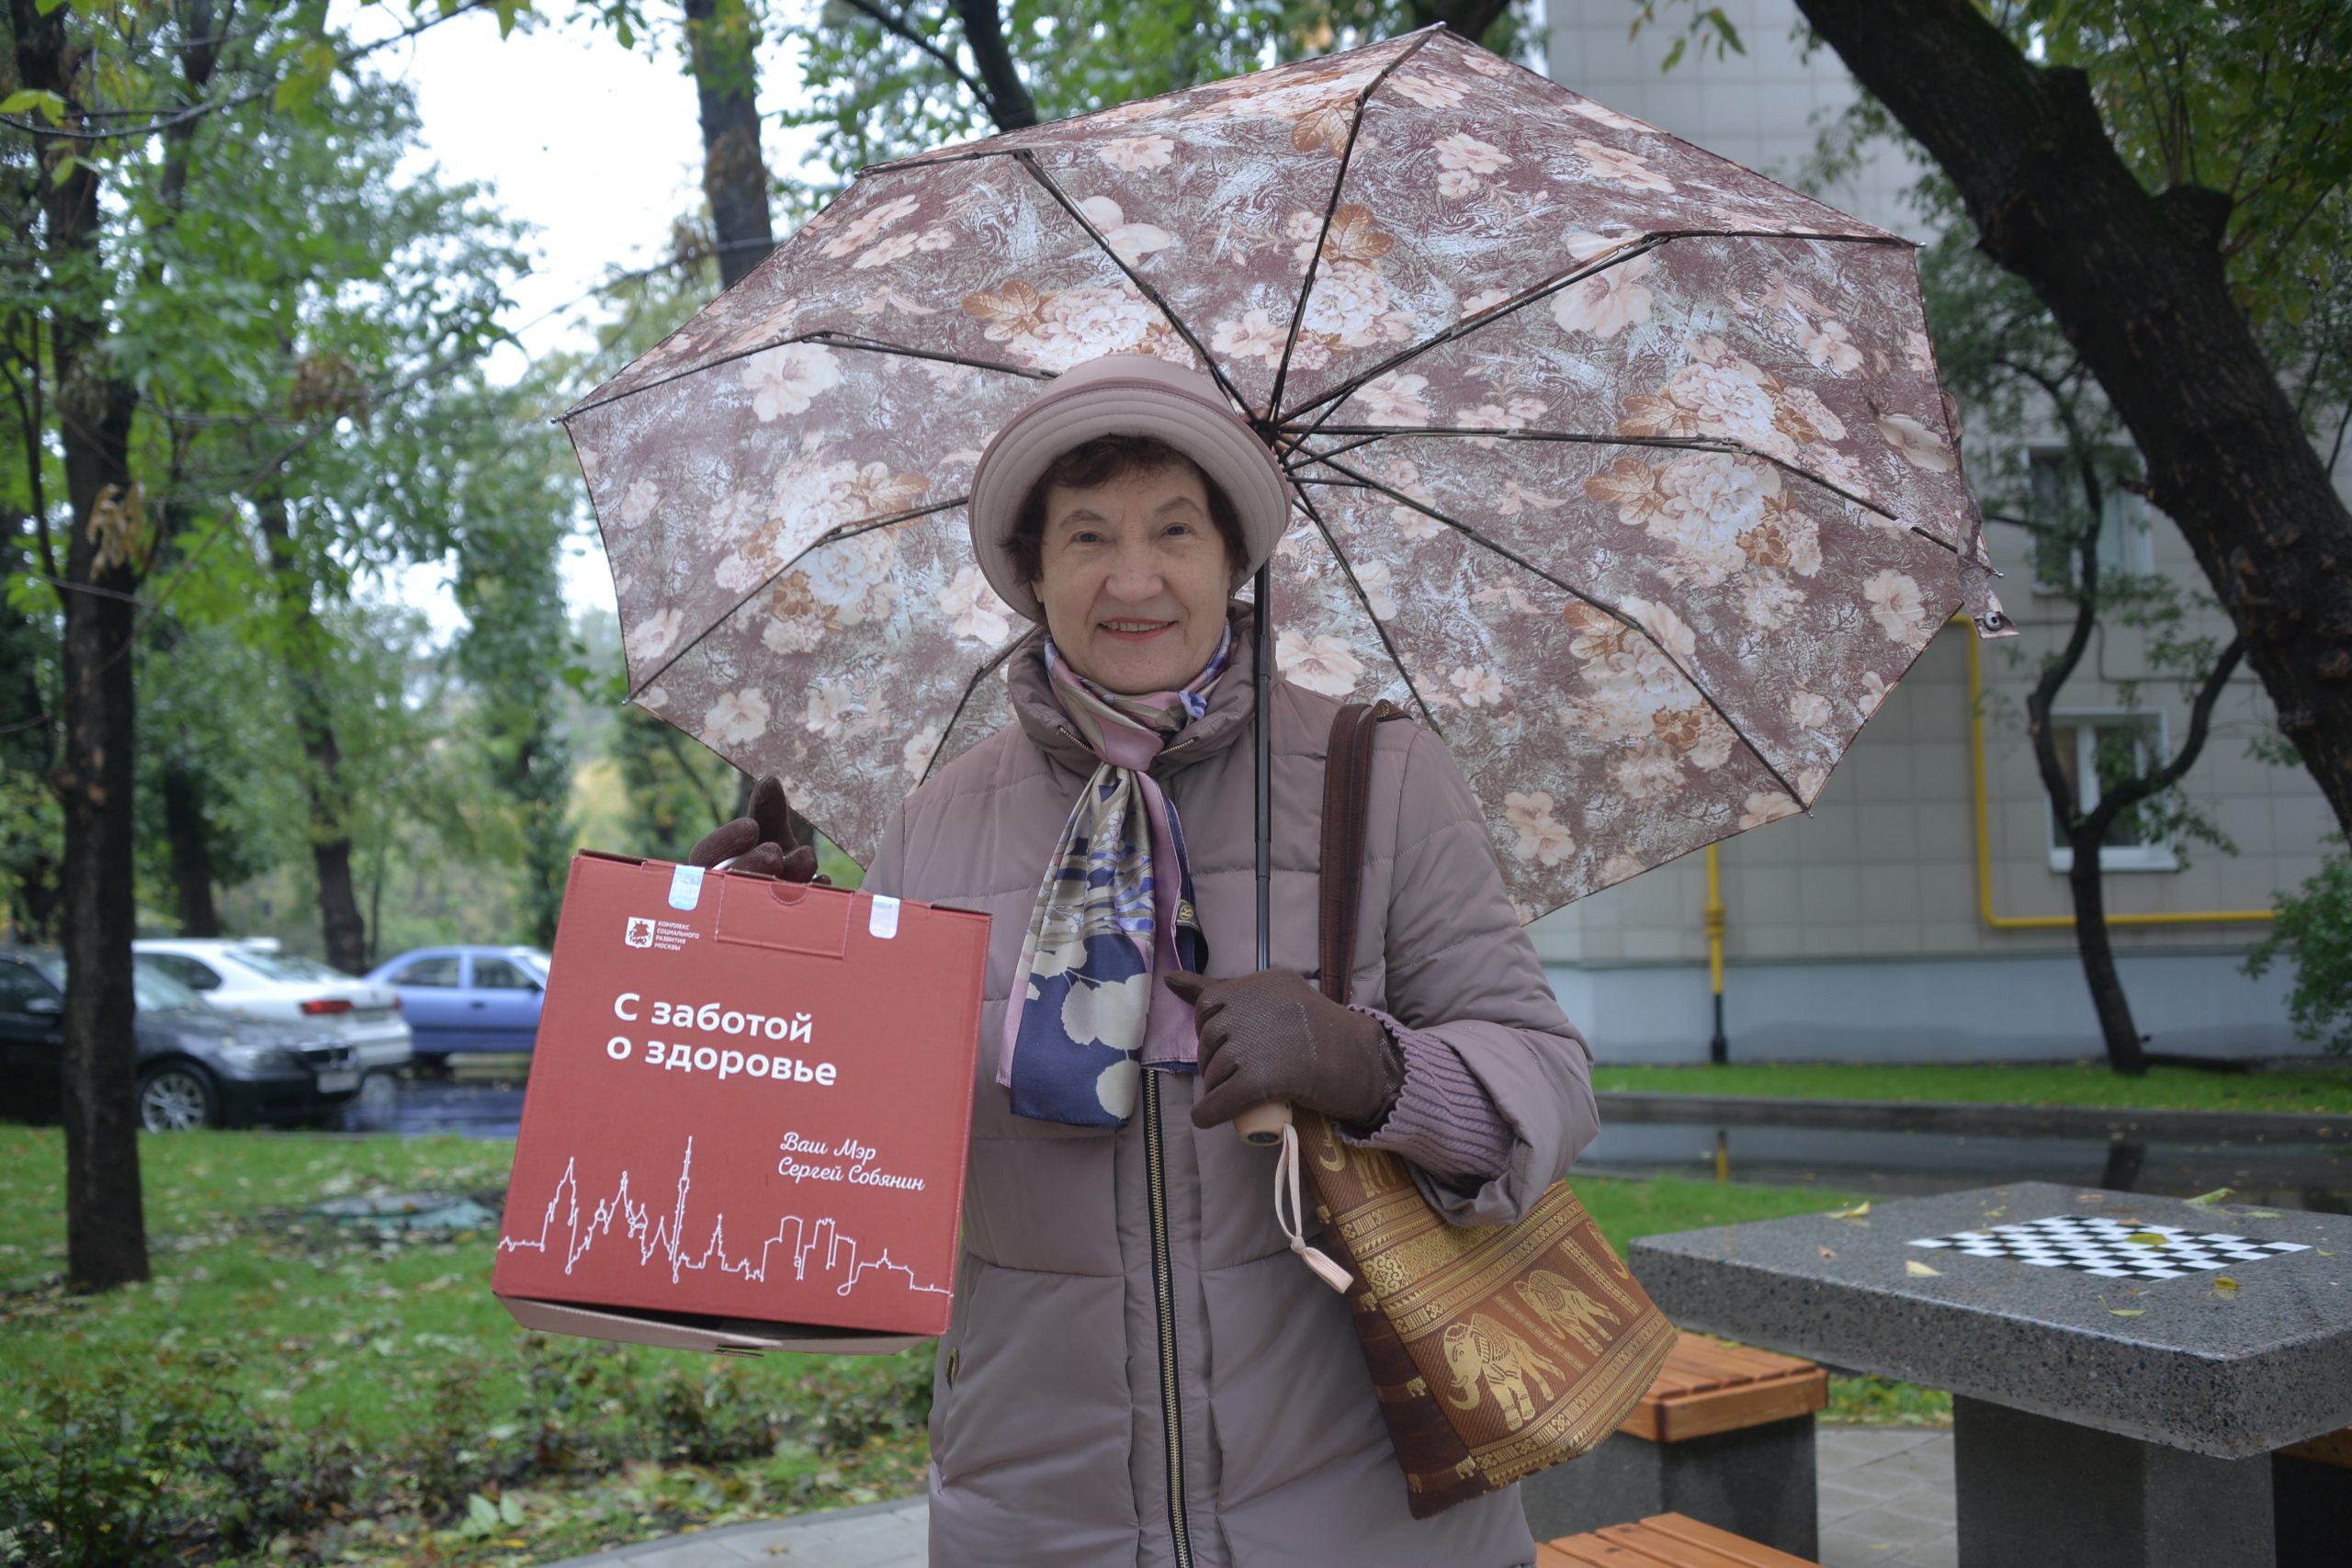 21 сентября 2021 года. 79-летняя пенсионерка Тамара Кузнецова повторно прошла вакцинацию от COVID-19 и получила подарок. Фото: Анна Маламкадзе, «Вечерняя Москва»